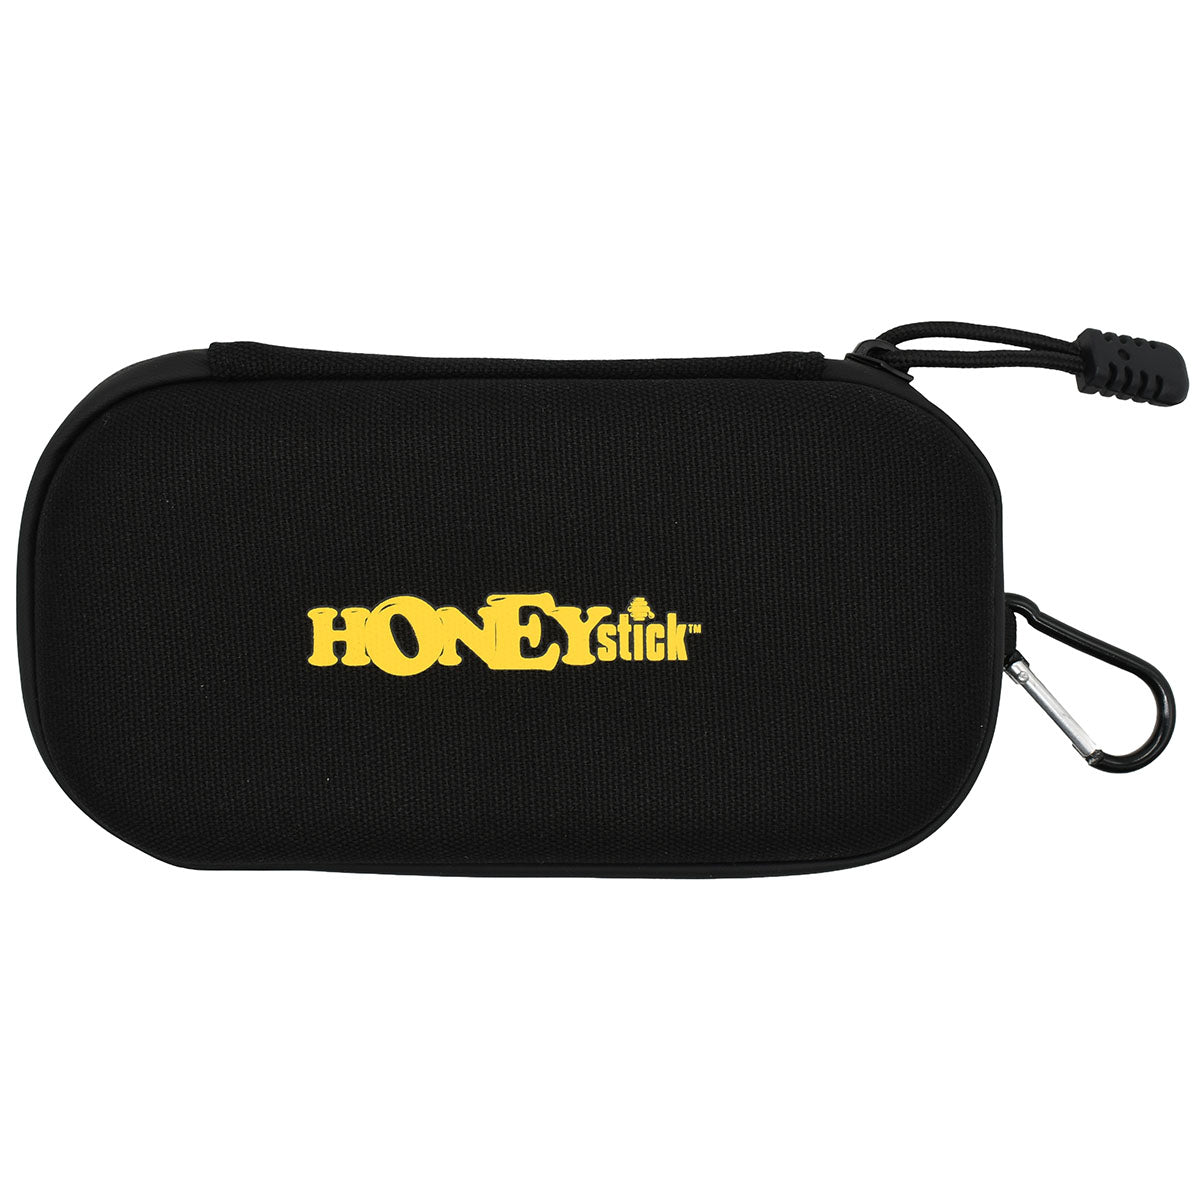 HoneyStick Carrying Zipper Case